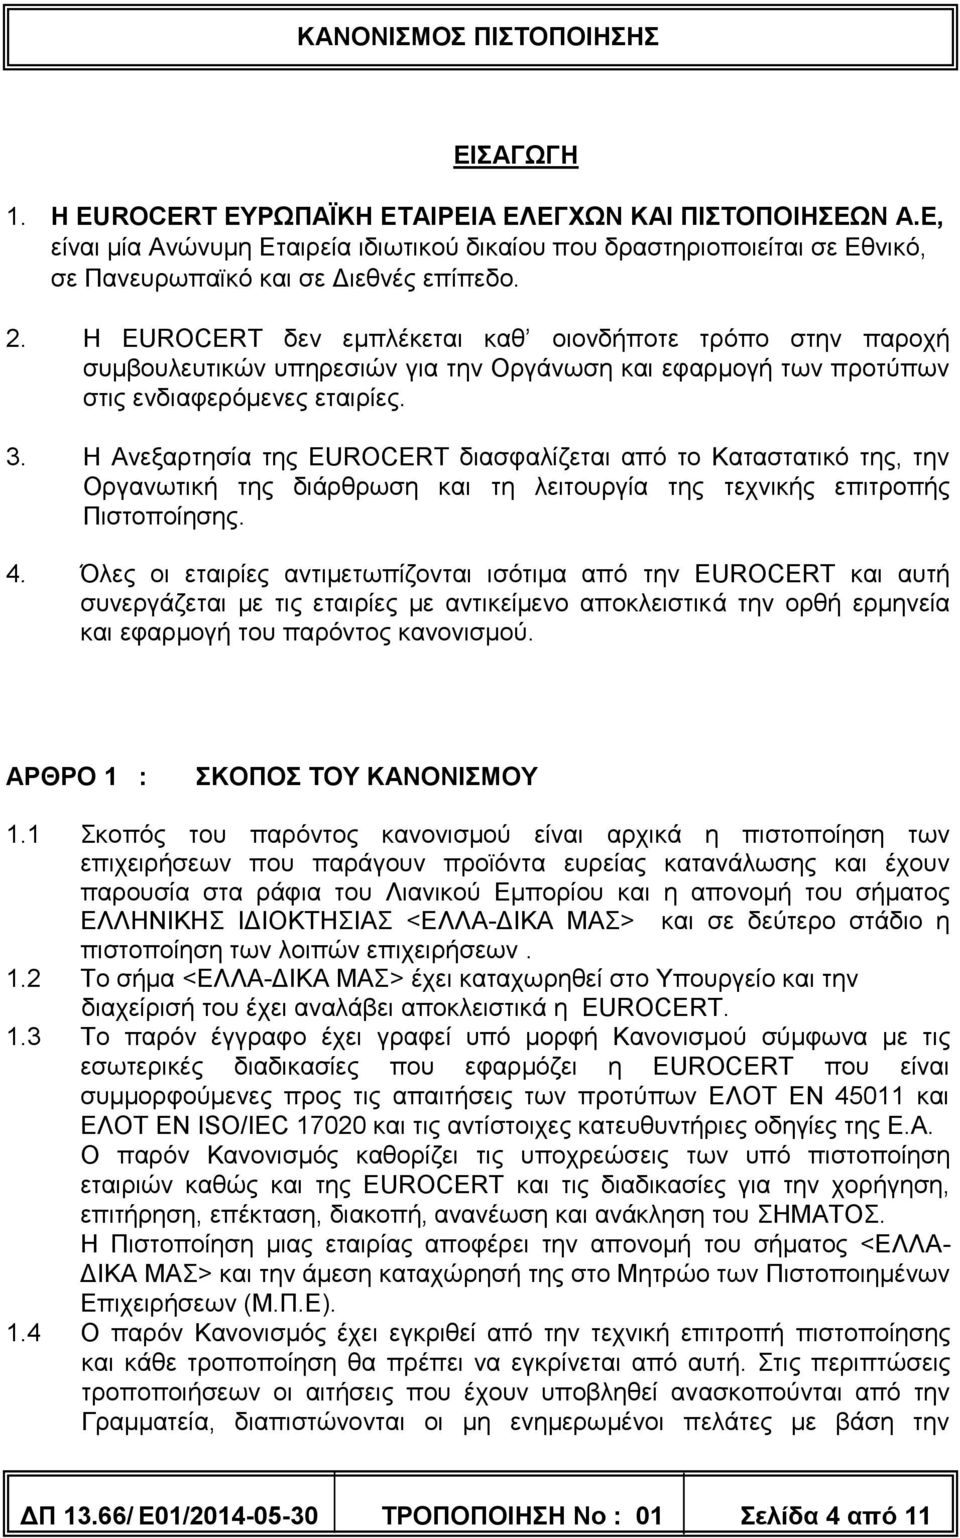 Η Ανεξαρτησία της EUROCERT διασφαλίζεται από το Καταστατικό της, την Οργανωτική της διάρθρωση και τη λειτουργία της τεχνικής επιτροπής Πιστοποίησης. 4.